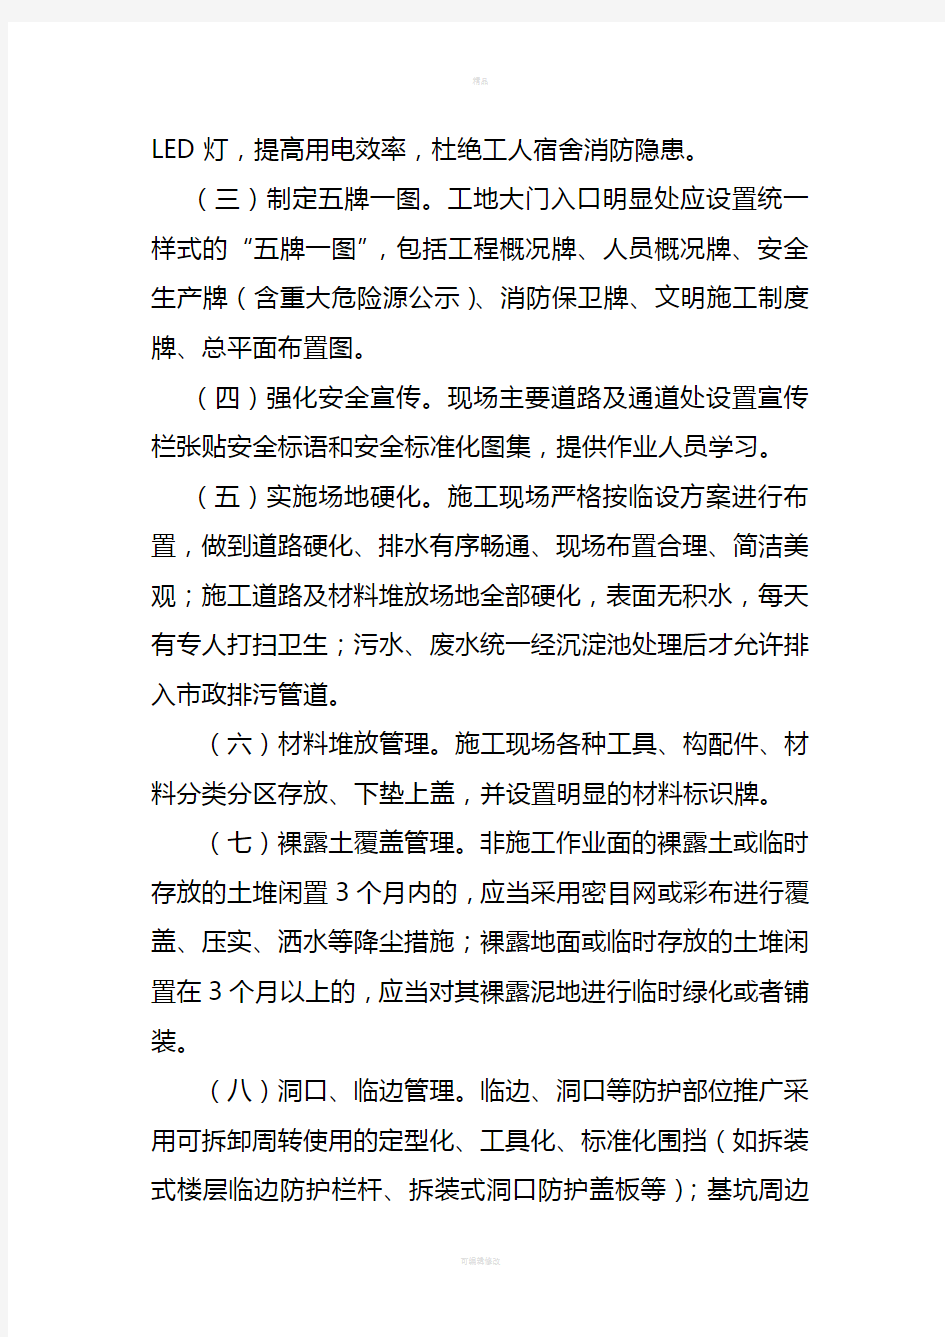 广州市提升建设工程安全文明施工管理水平的工作指引